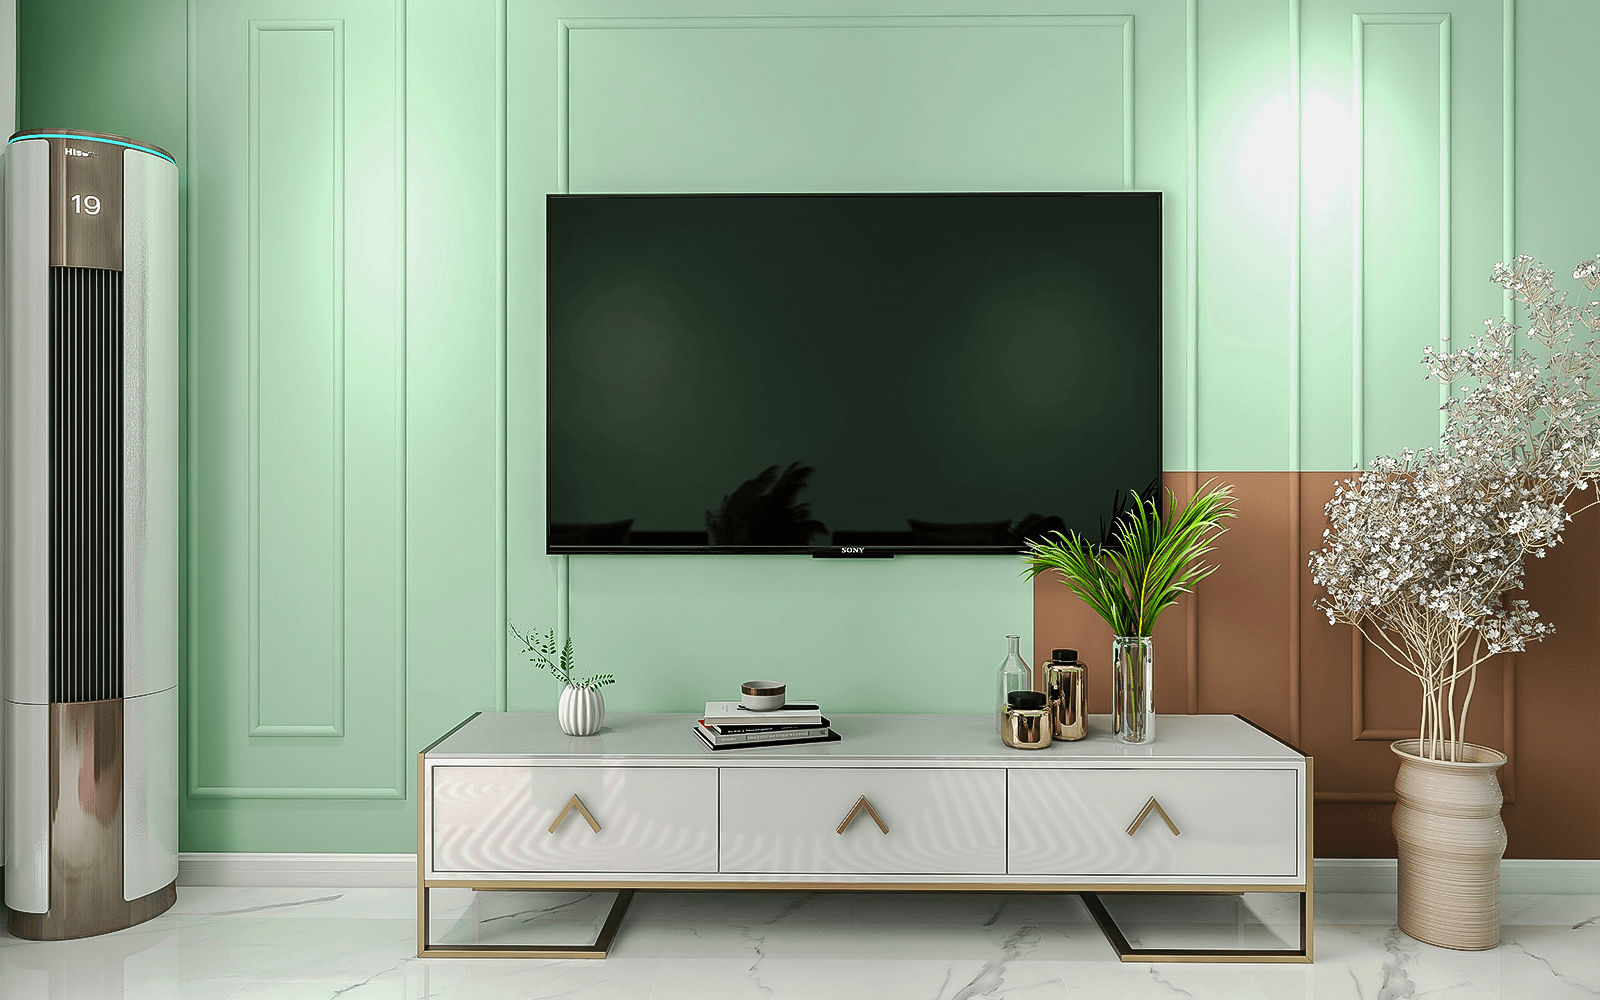 客厅电视背景墙用了清新绿色，淡雅有朝气，石膏线勾勒出了精致感。为了不影响整体墙面的完整性，电视柜用了落地金属支架的抽屉款式，收纳量足够，也好打扫卫生，颜色与地砖搭配起来也很和谐。